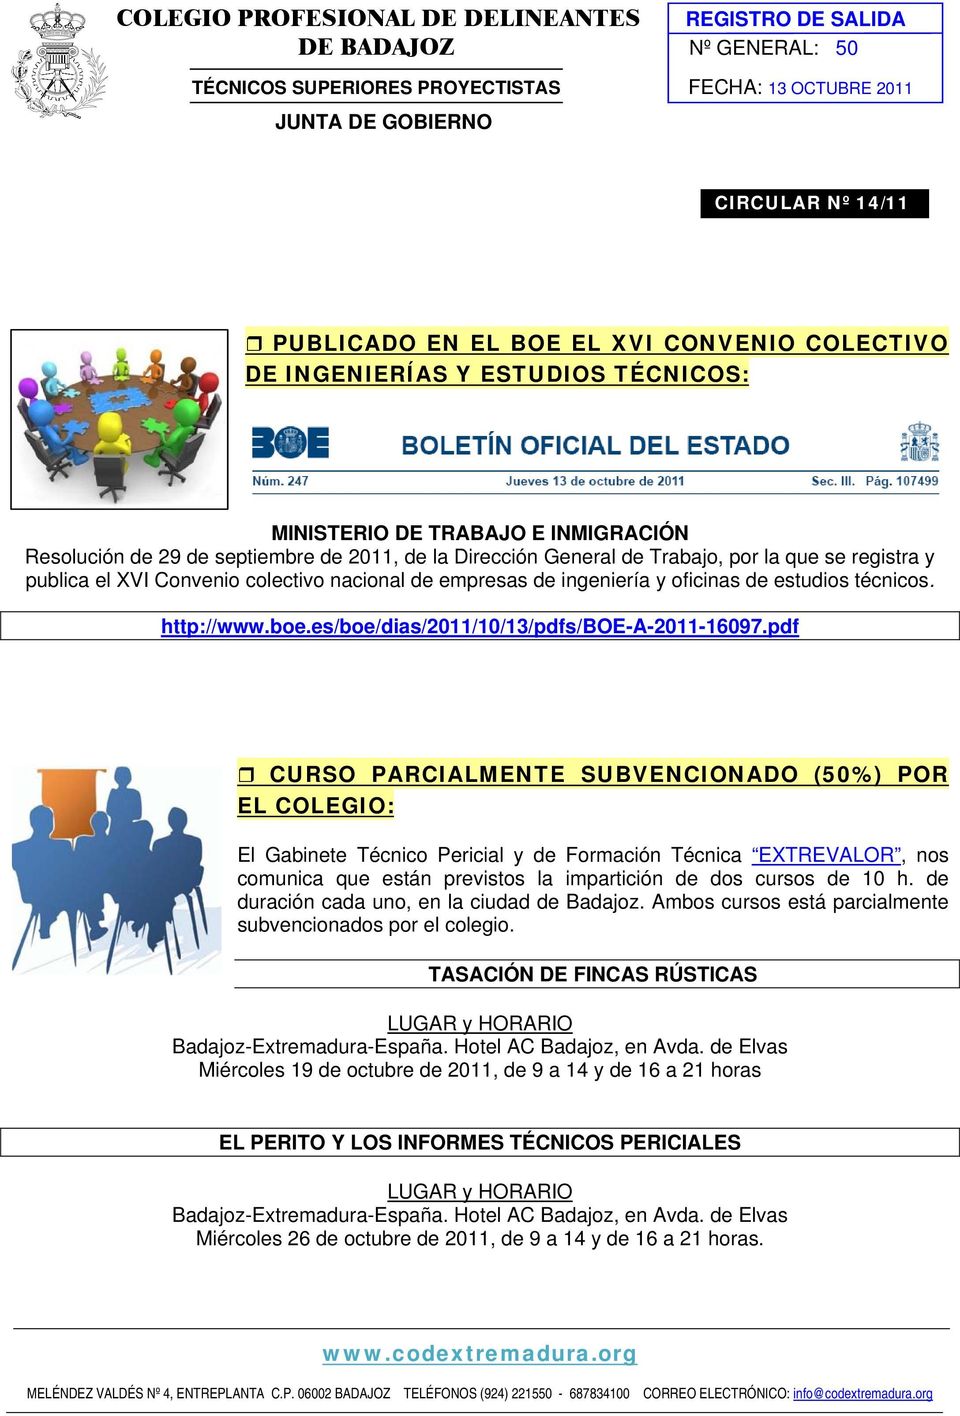 el XVI Convenio colectivo nacional de empresas de ingeniería y oficinas de estudios técnicos. http://www.boe.es/boe/dias/2011/10/13/pdfs/boe-a-2011-16097.